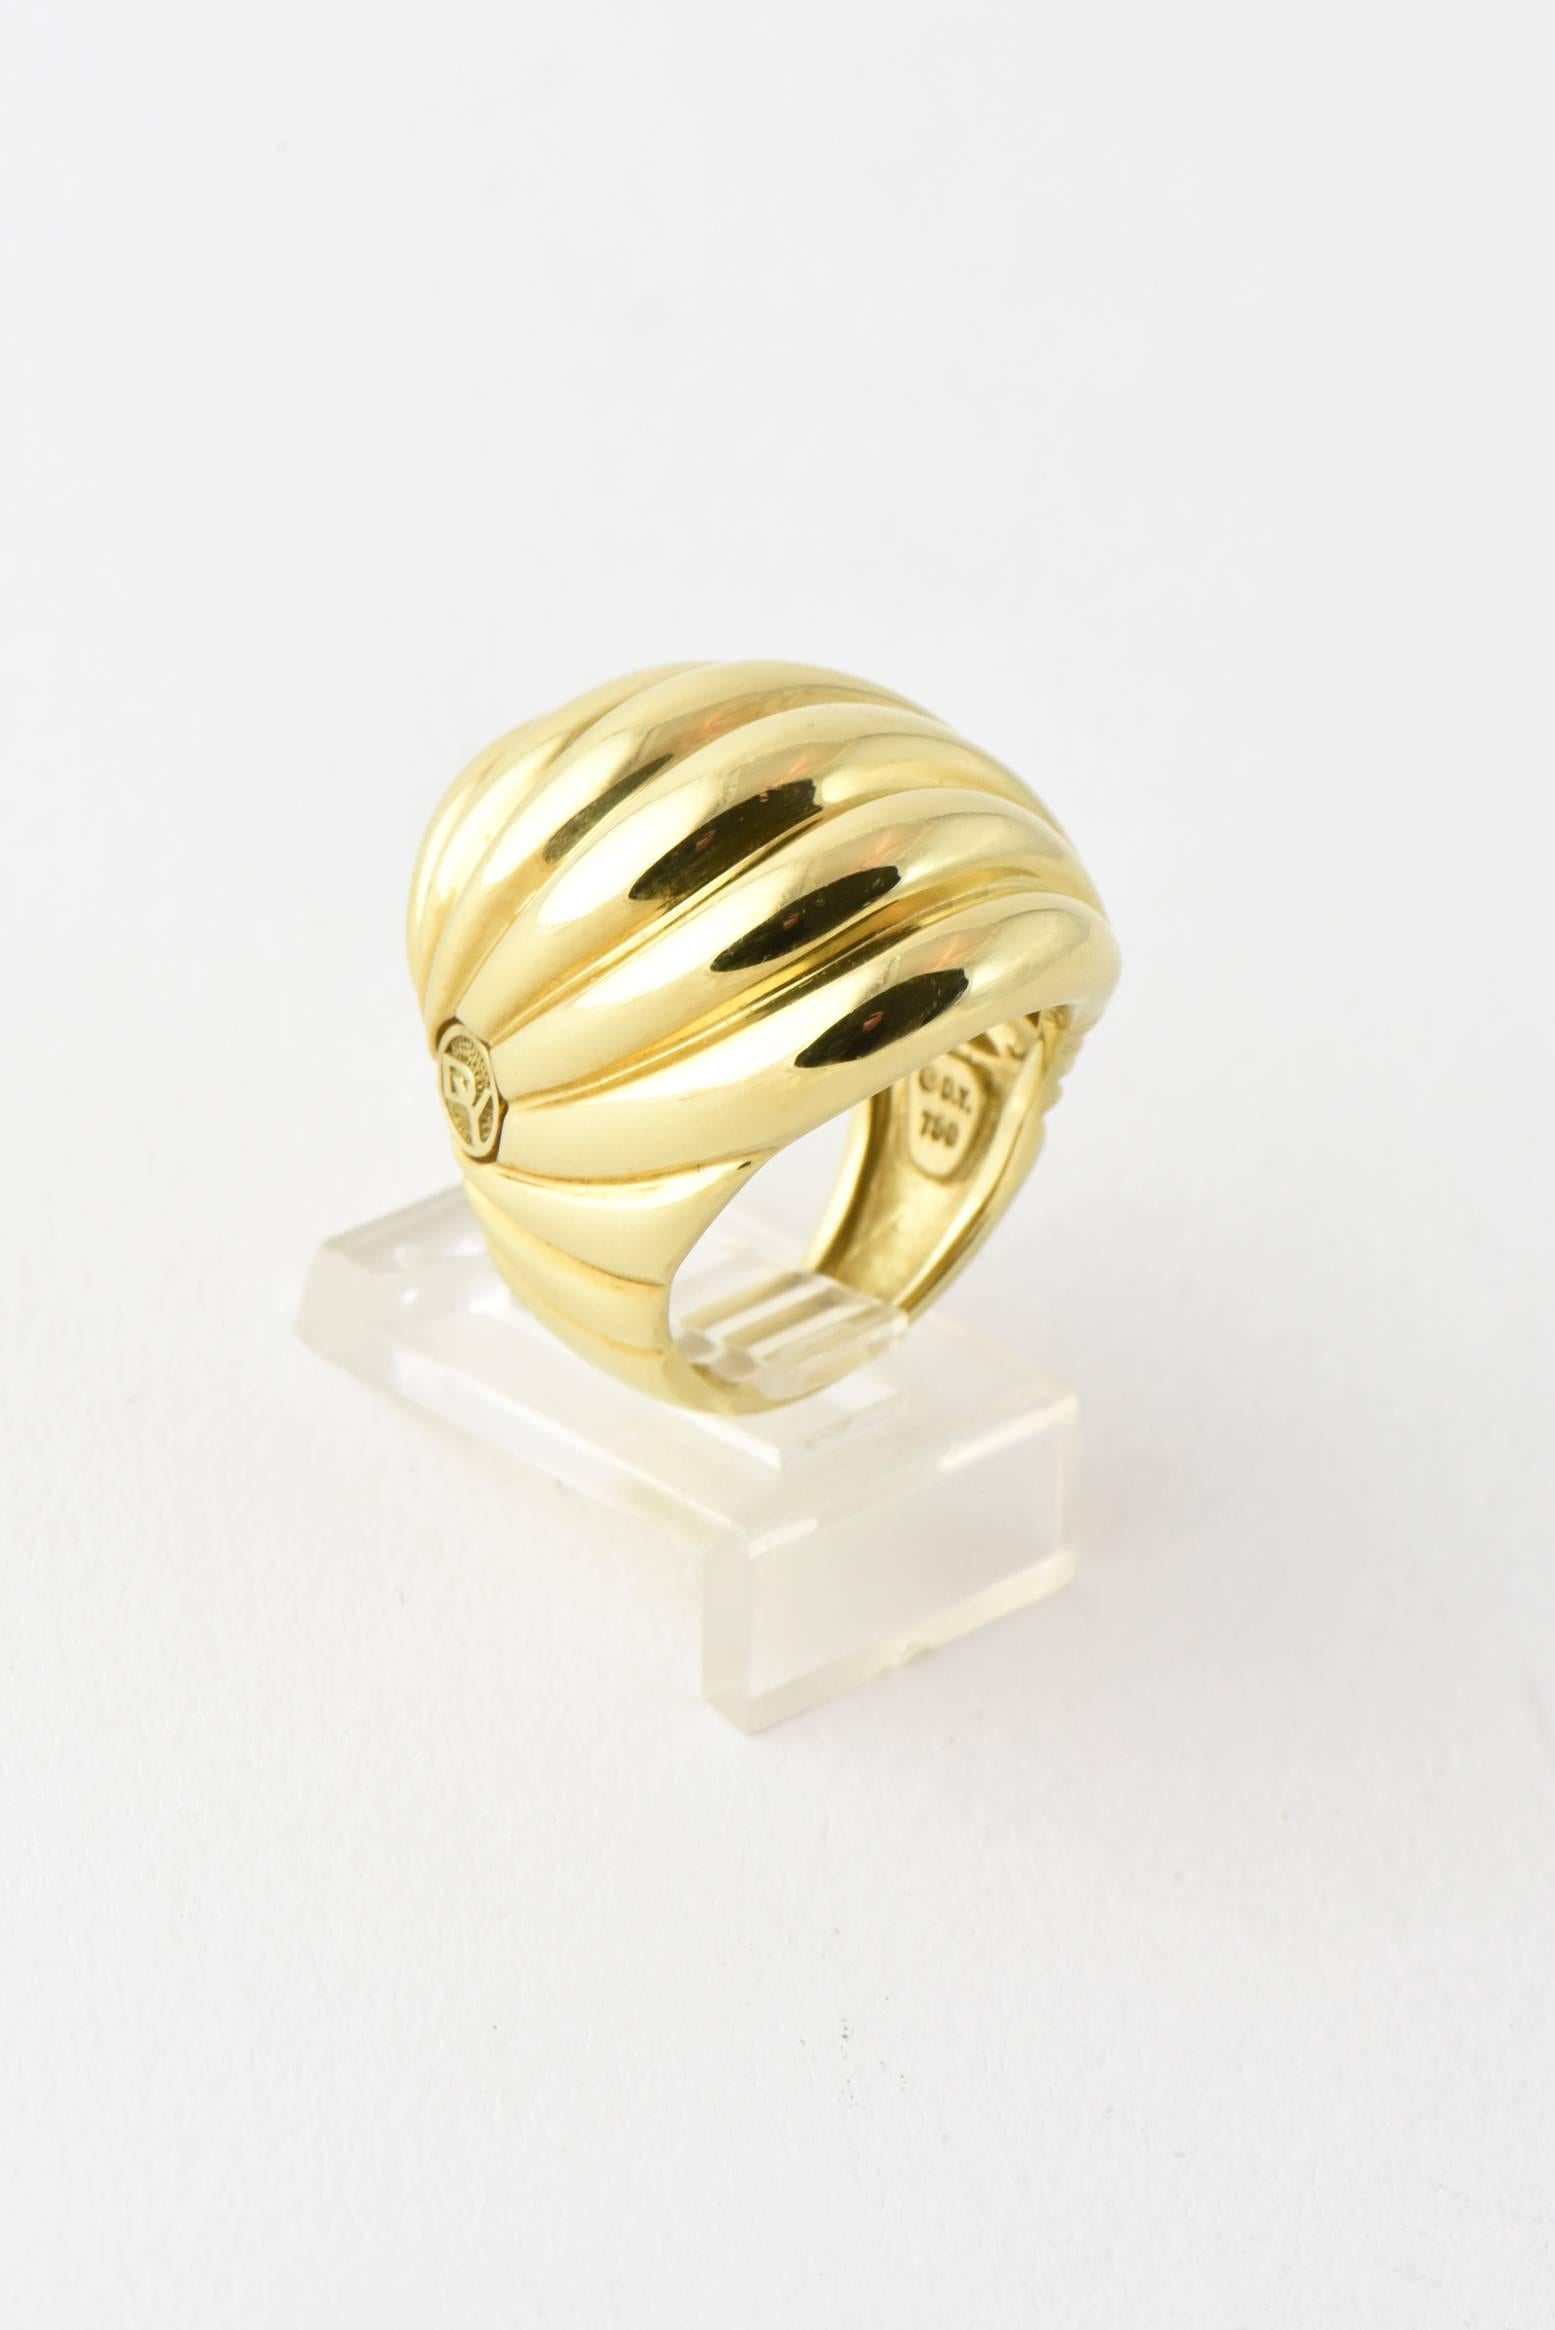 david yurman gold dome ring